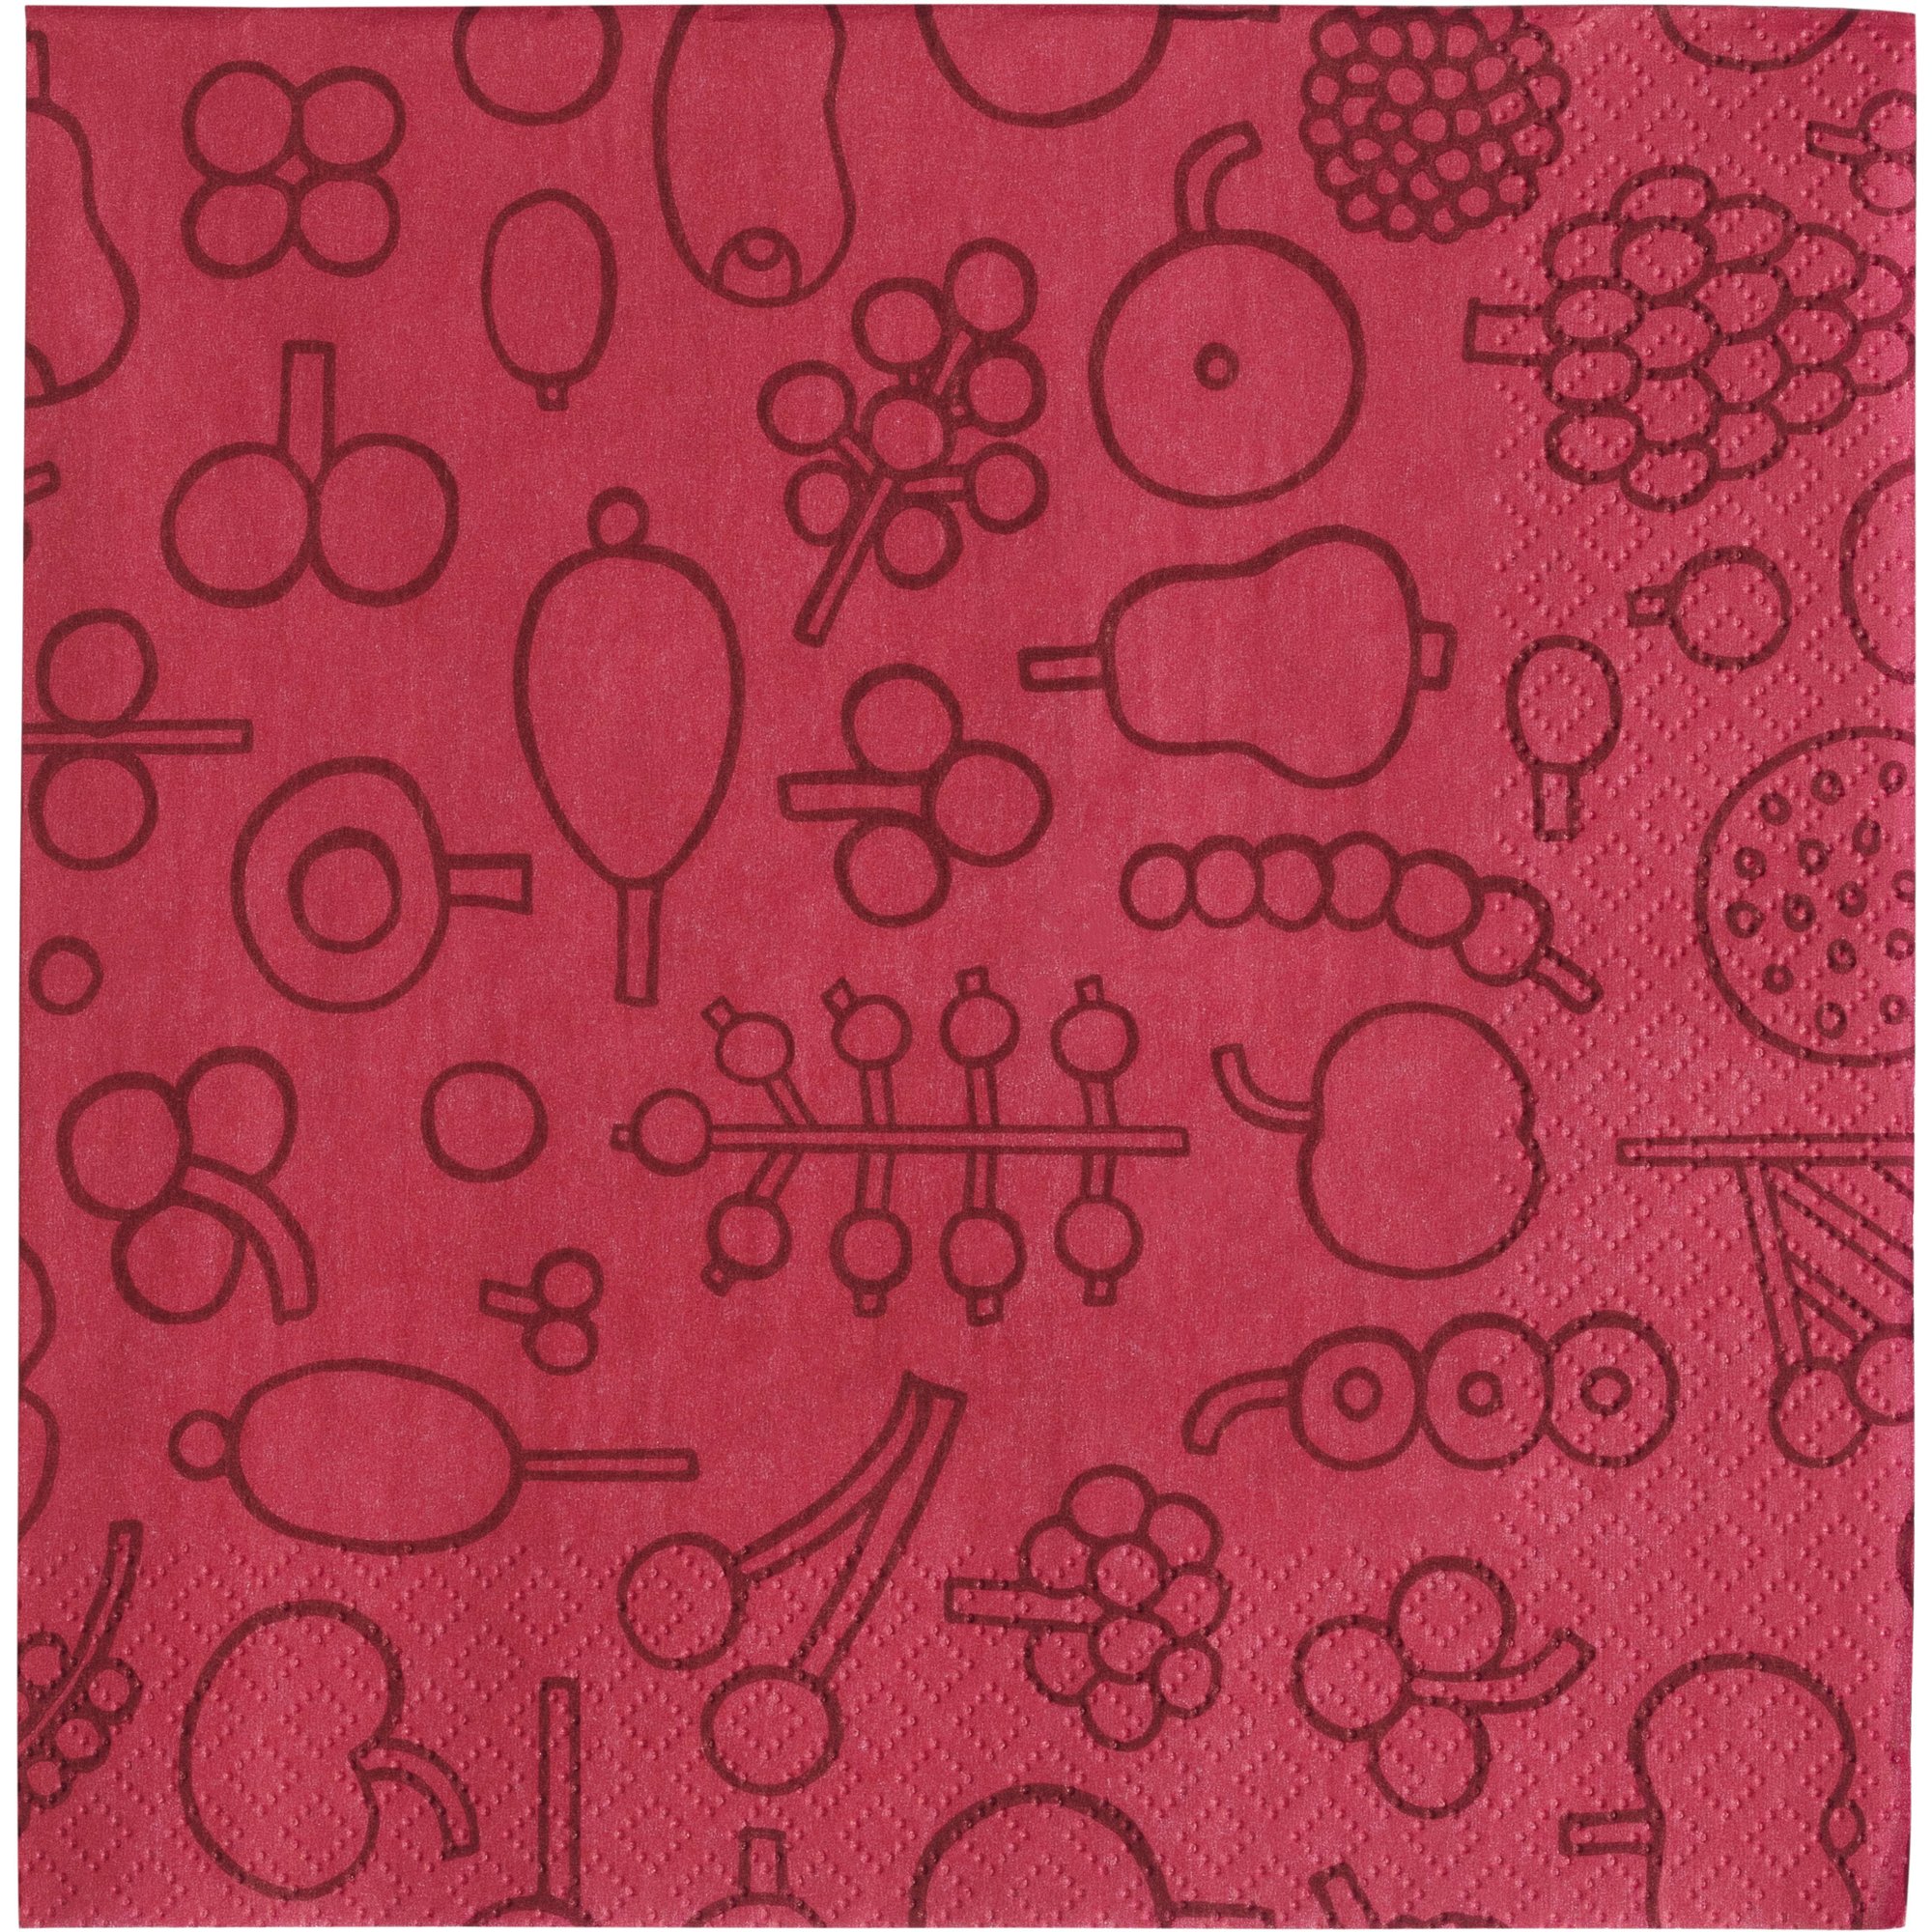 Iittala Oiva Toikka Collection papirserviet 33 cm frutta rød